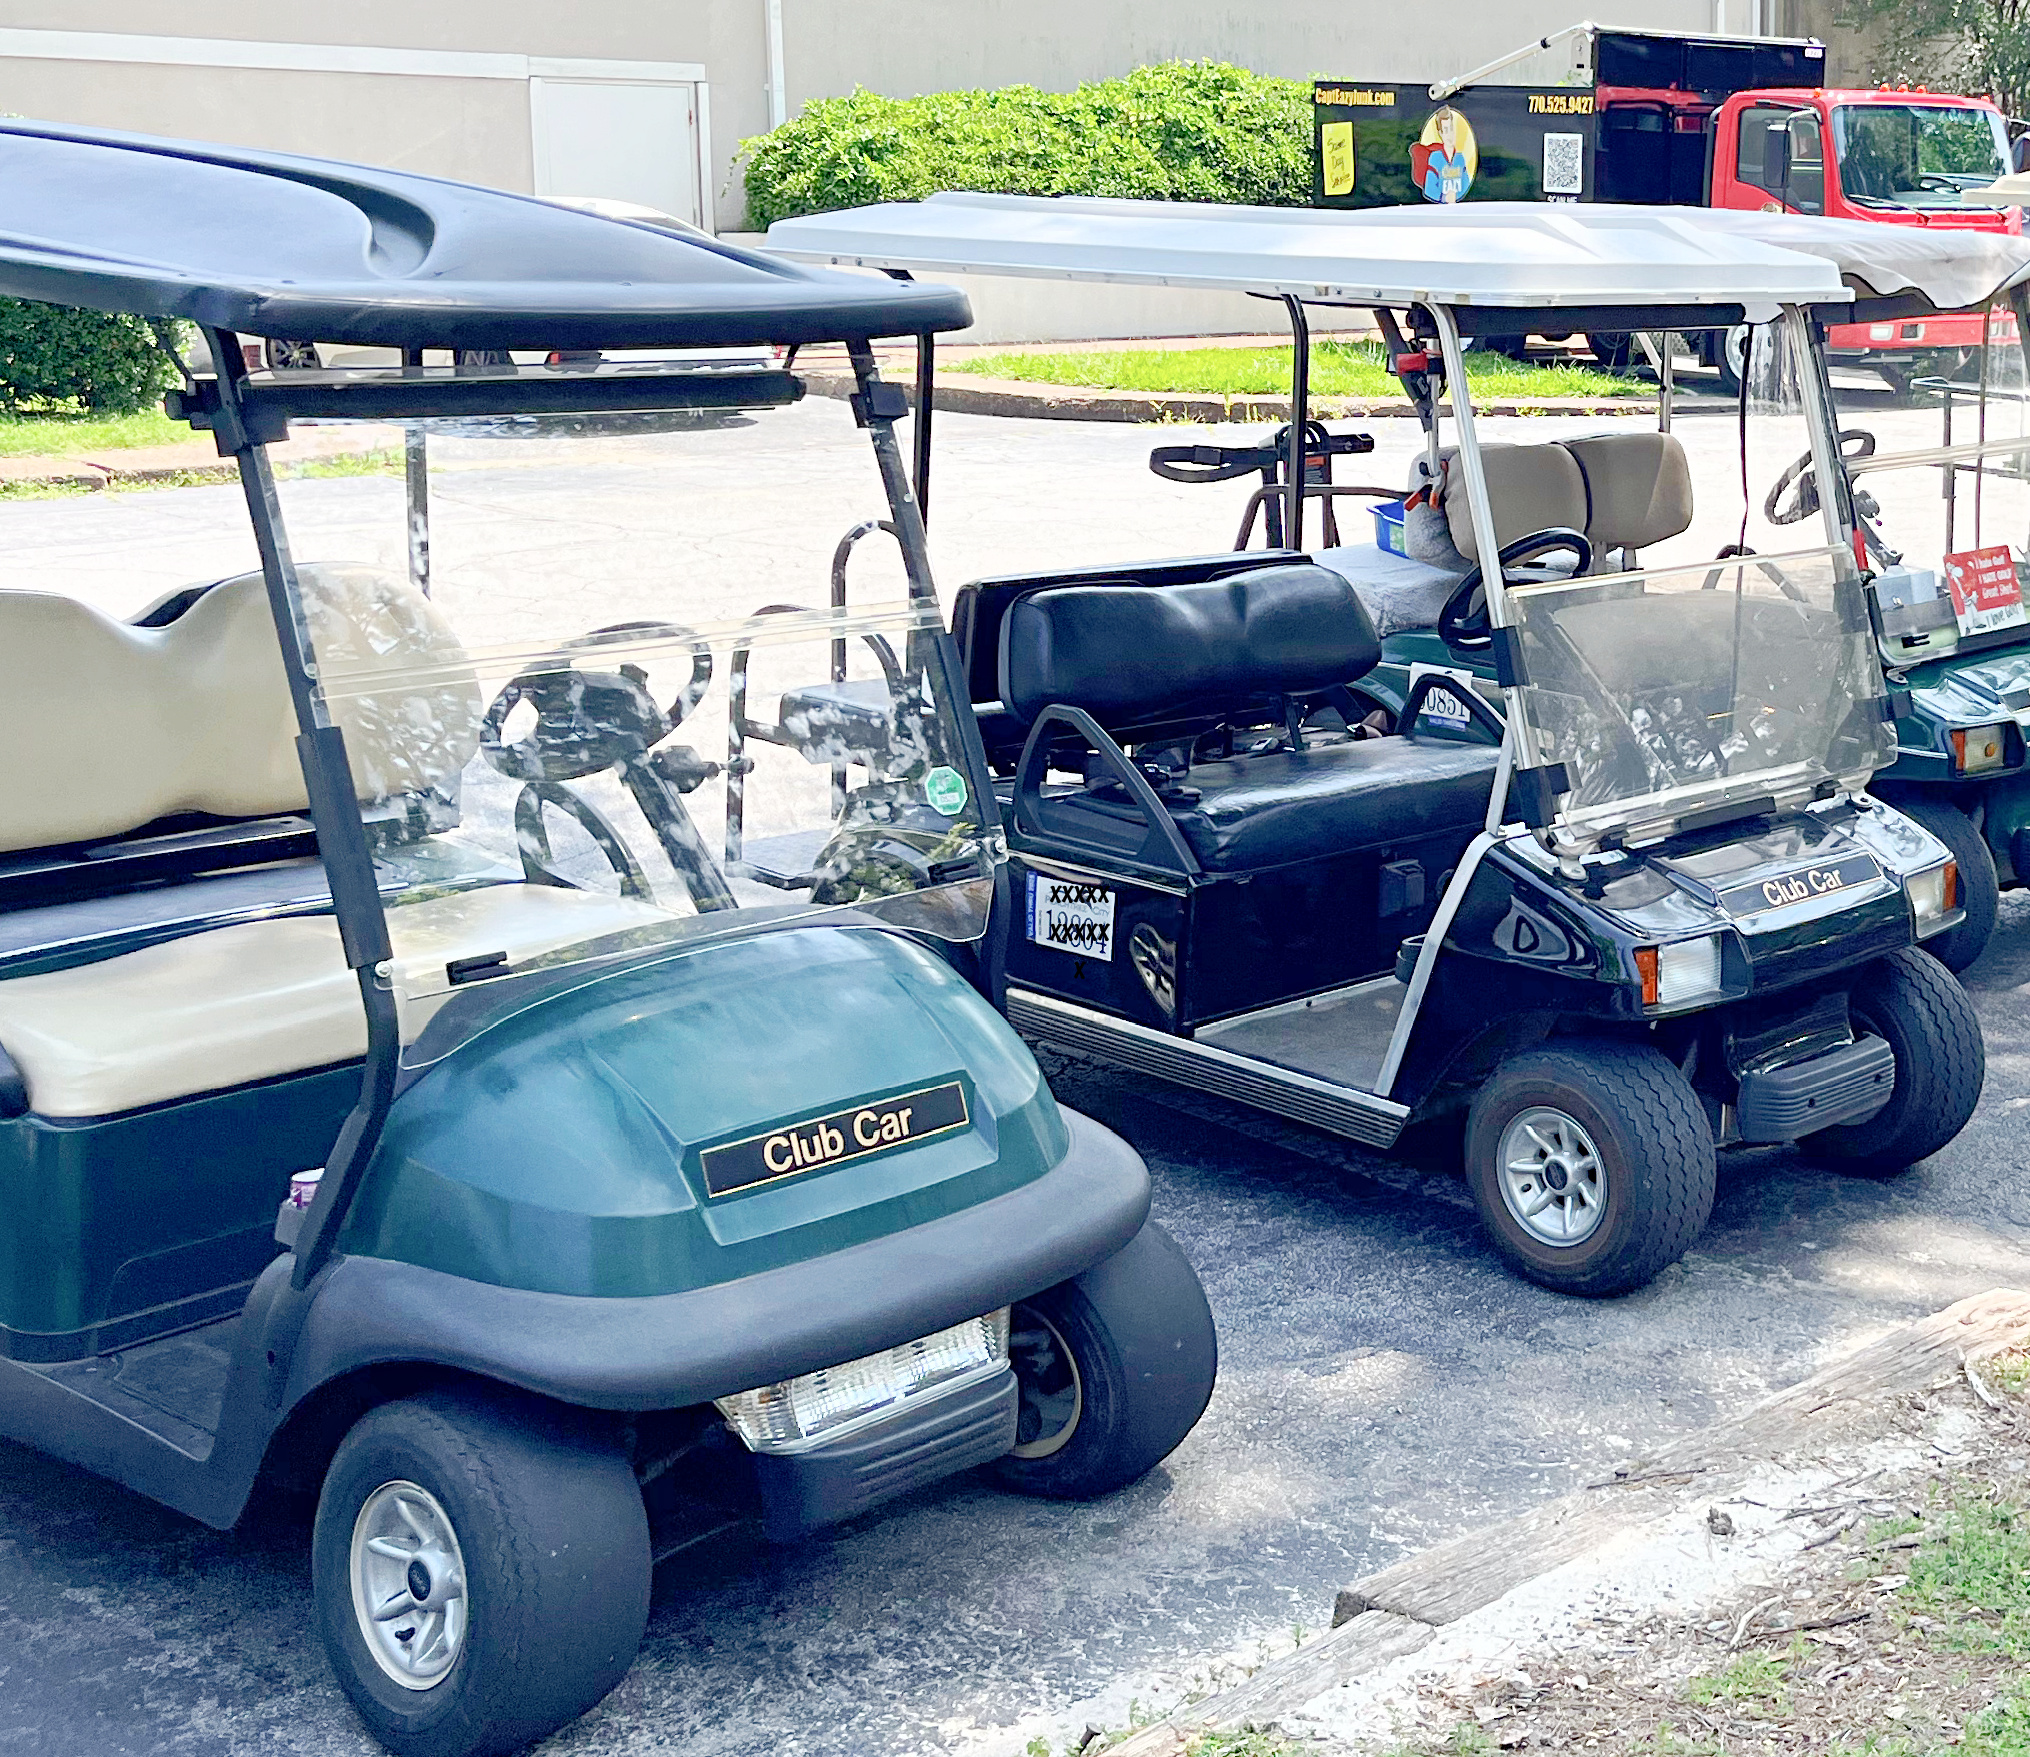 Club Car golf cart models